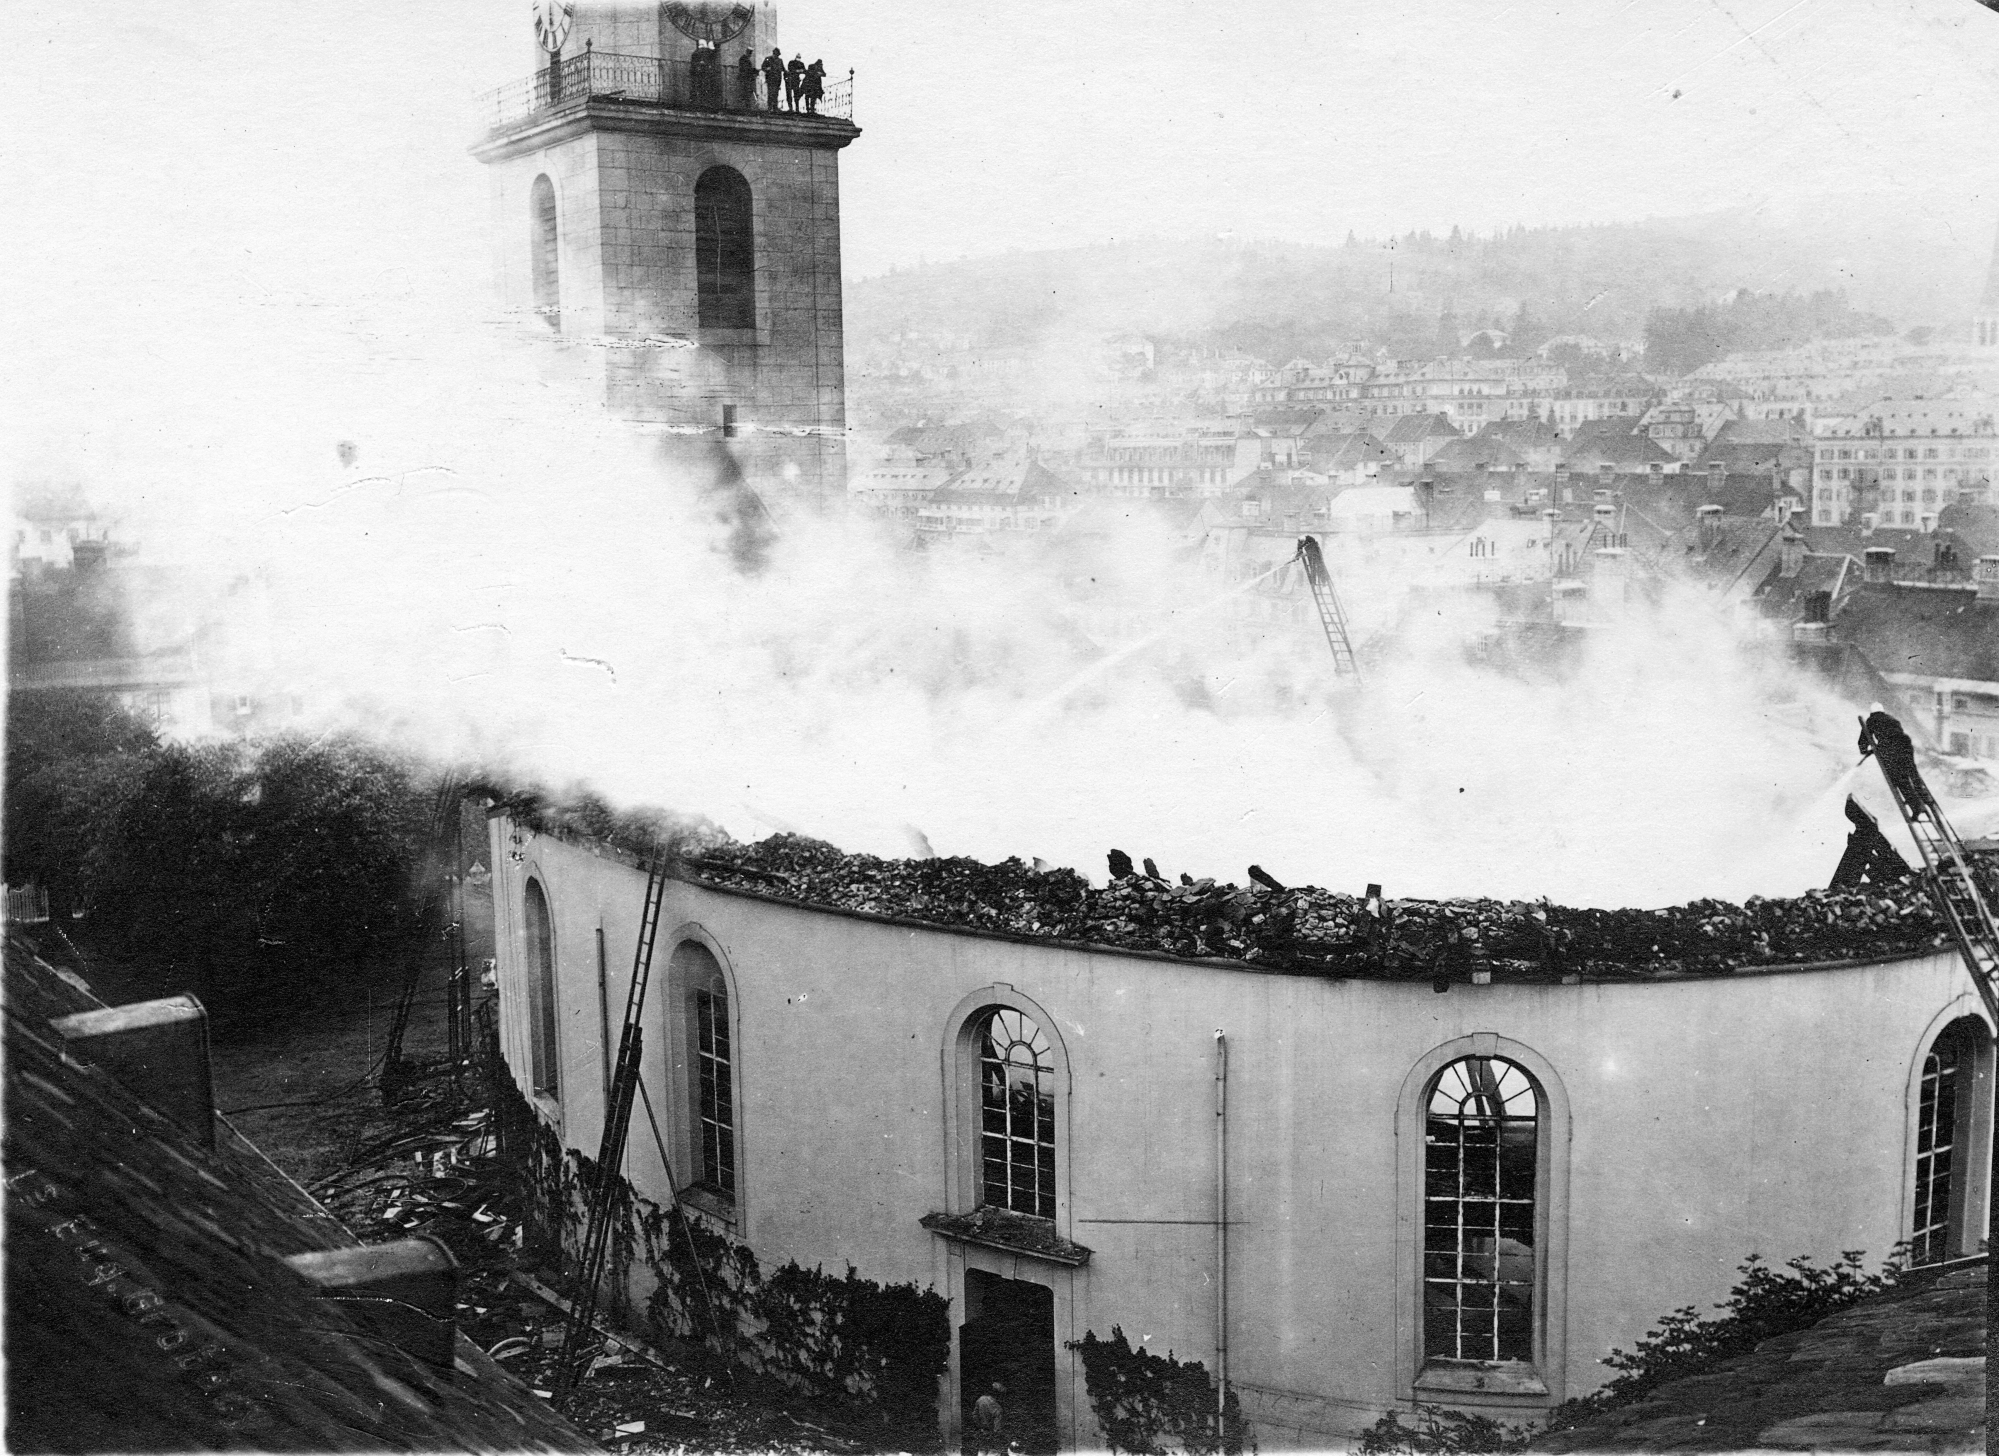 Le 16 juillet 1919, le Grand Temple de La Chaux-de-Fonds part en fumée. Détruits, la charpente et le toit s'effondrent dans le bâtiment.